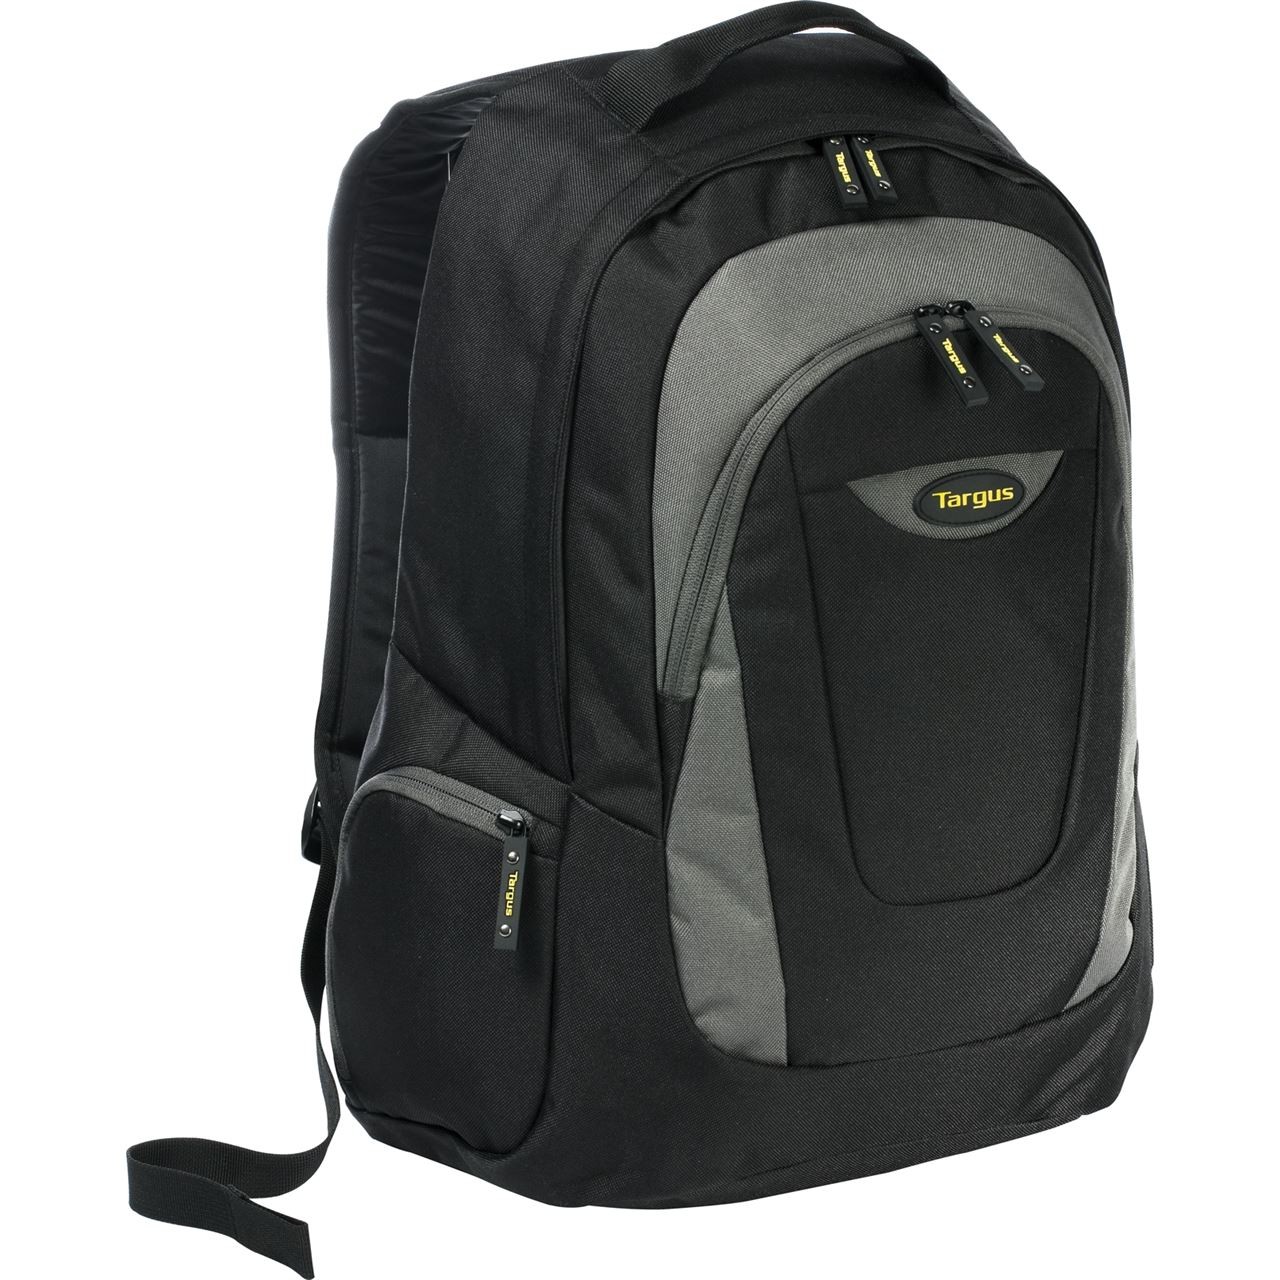 Targus TSB193US-70 Trek 16 Inch Backpack for Laptops